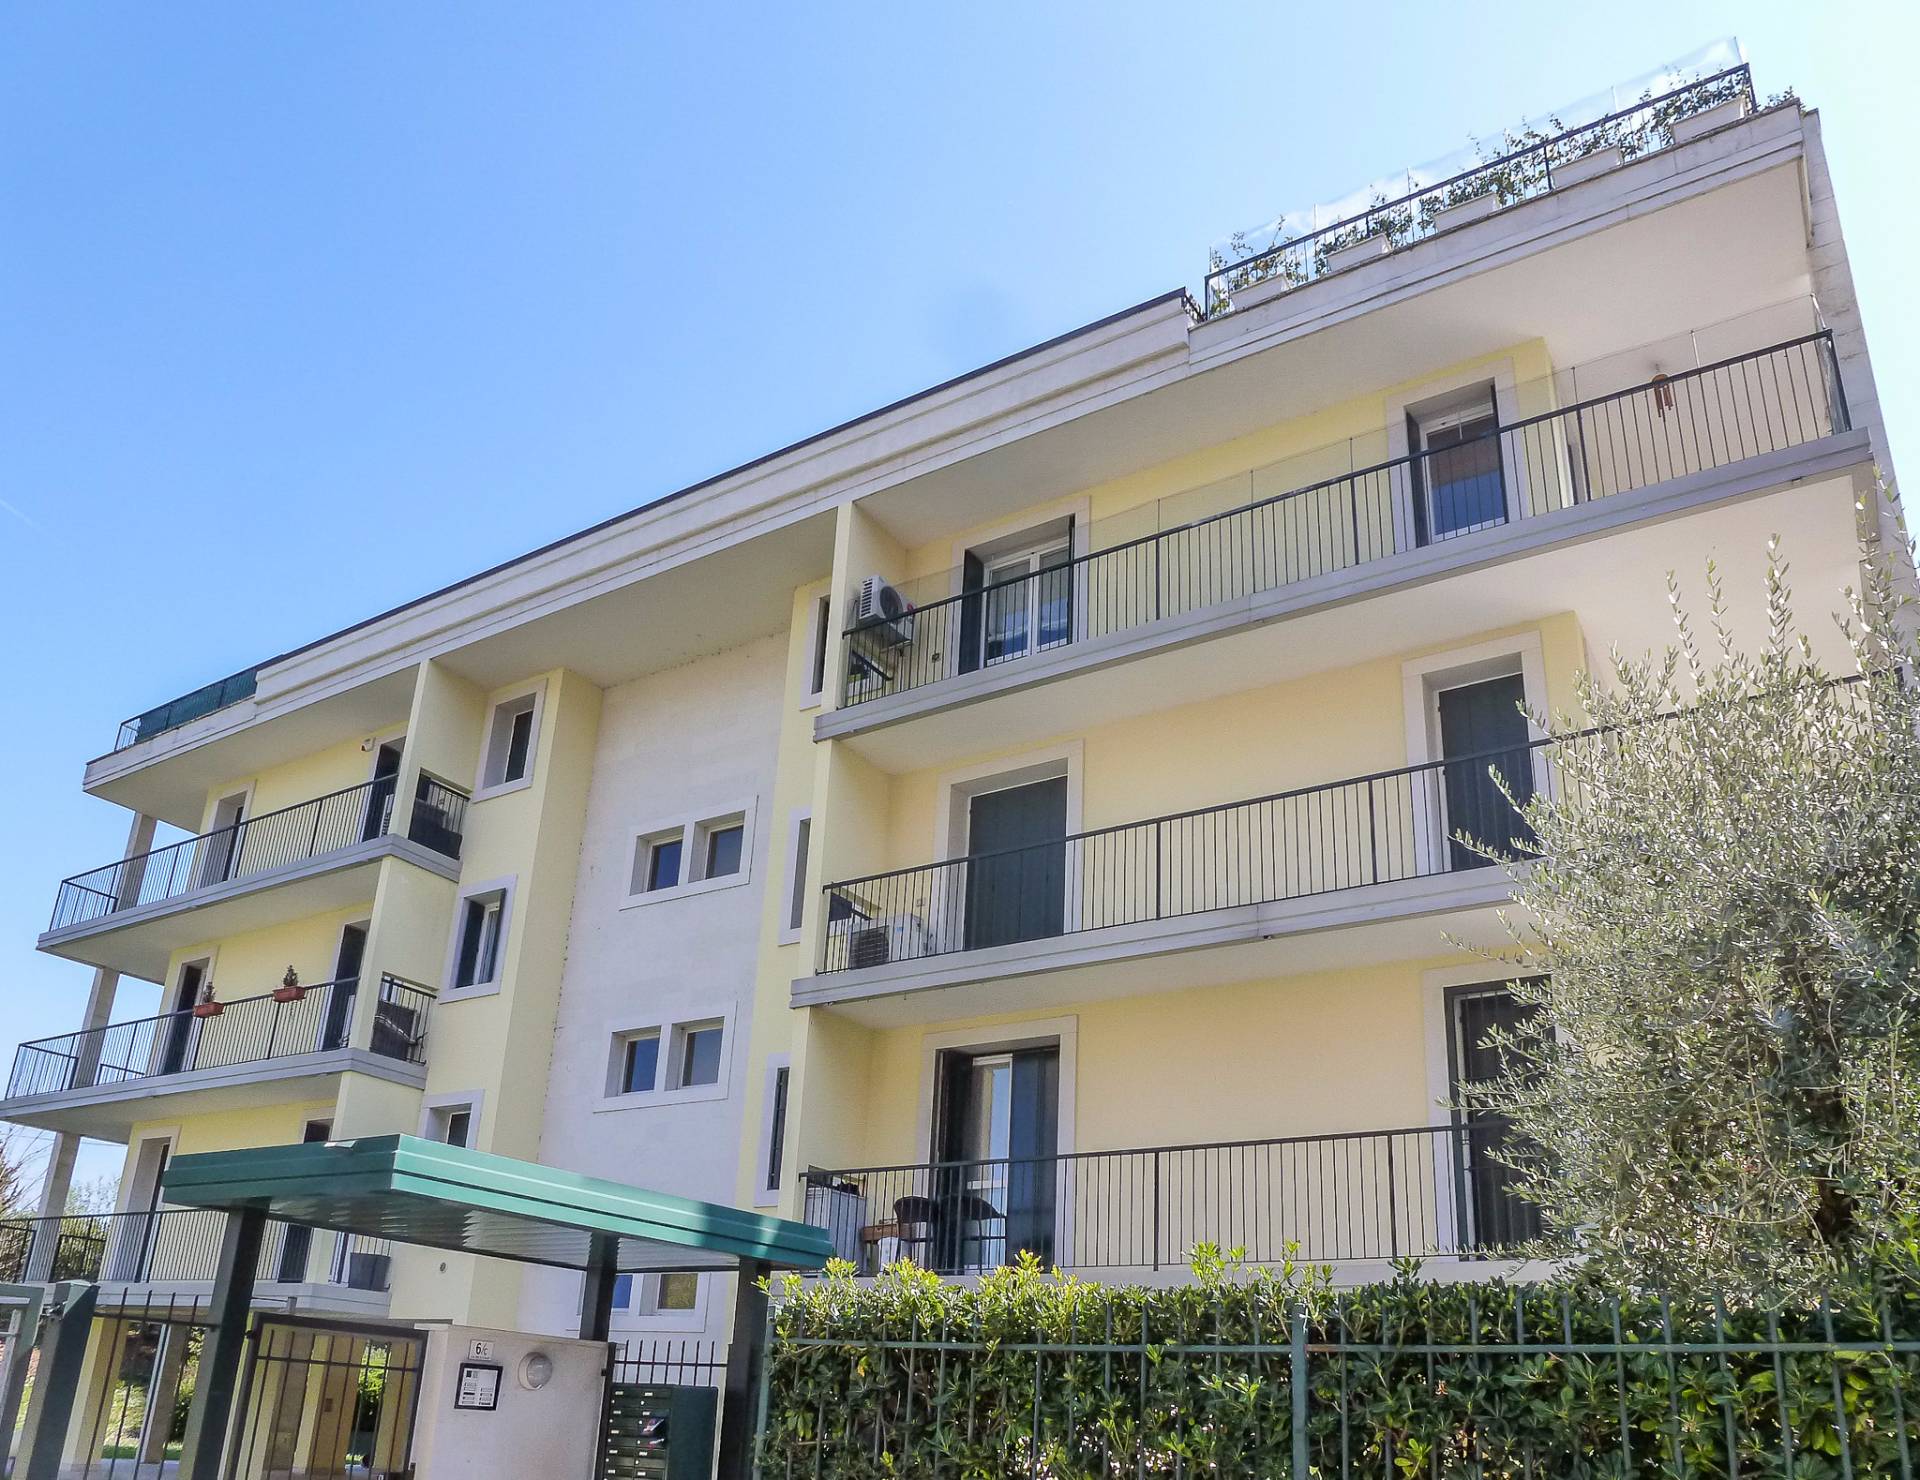 Appartamento in affitto a Verona, 7 locali, zona Località: PonteCrencano, prezzo € 1.500 | CambioCasa.it